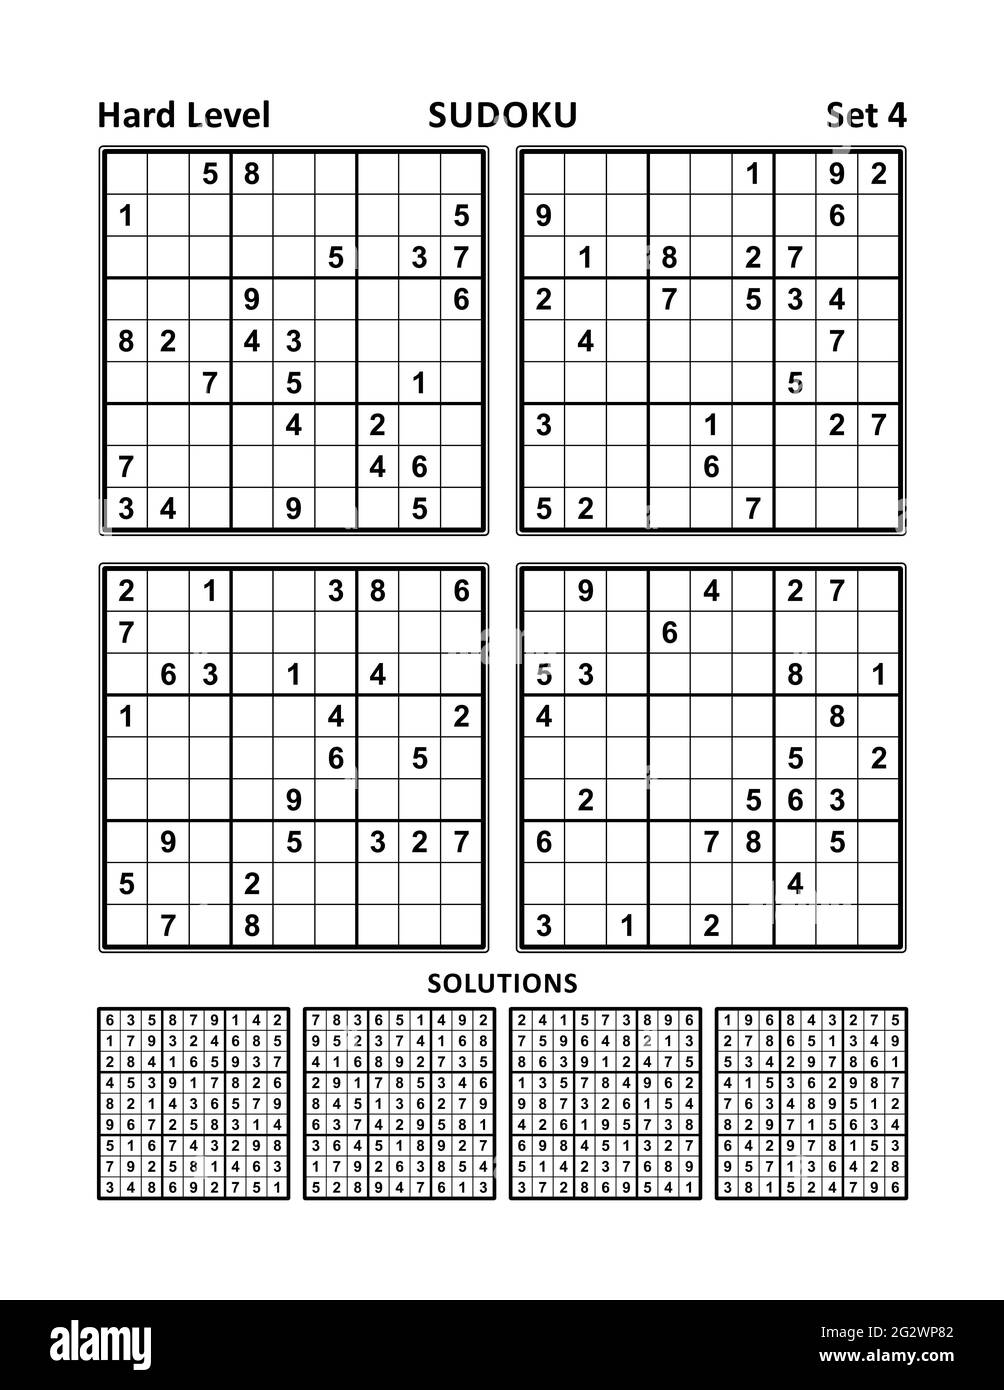 Sudoku; Coquetel Sudoku; jogos, São Paulo, Brasil Stock Photo - Alamy